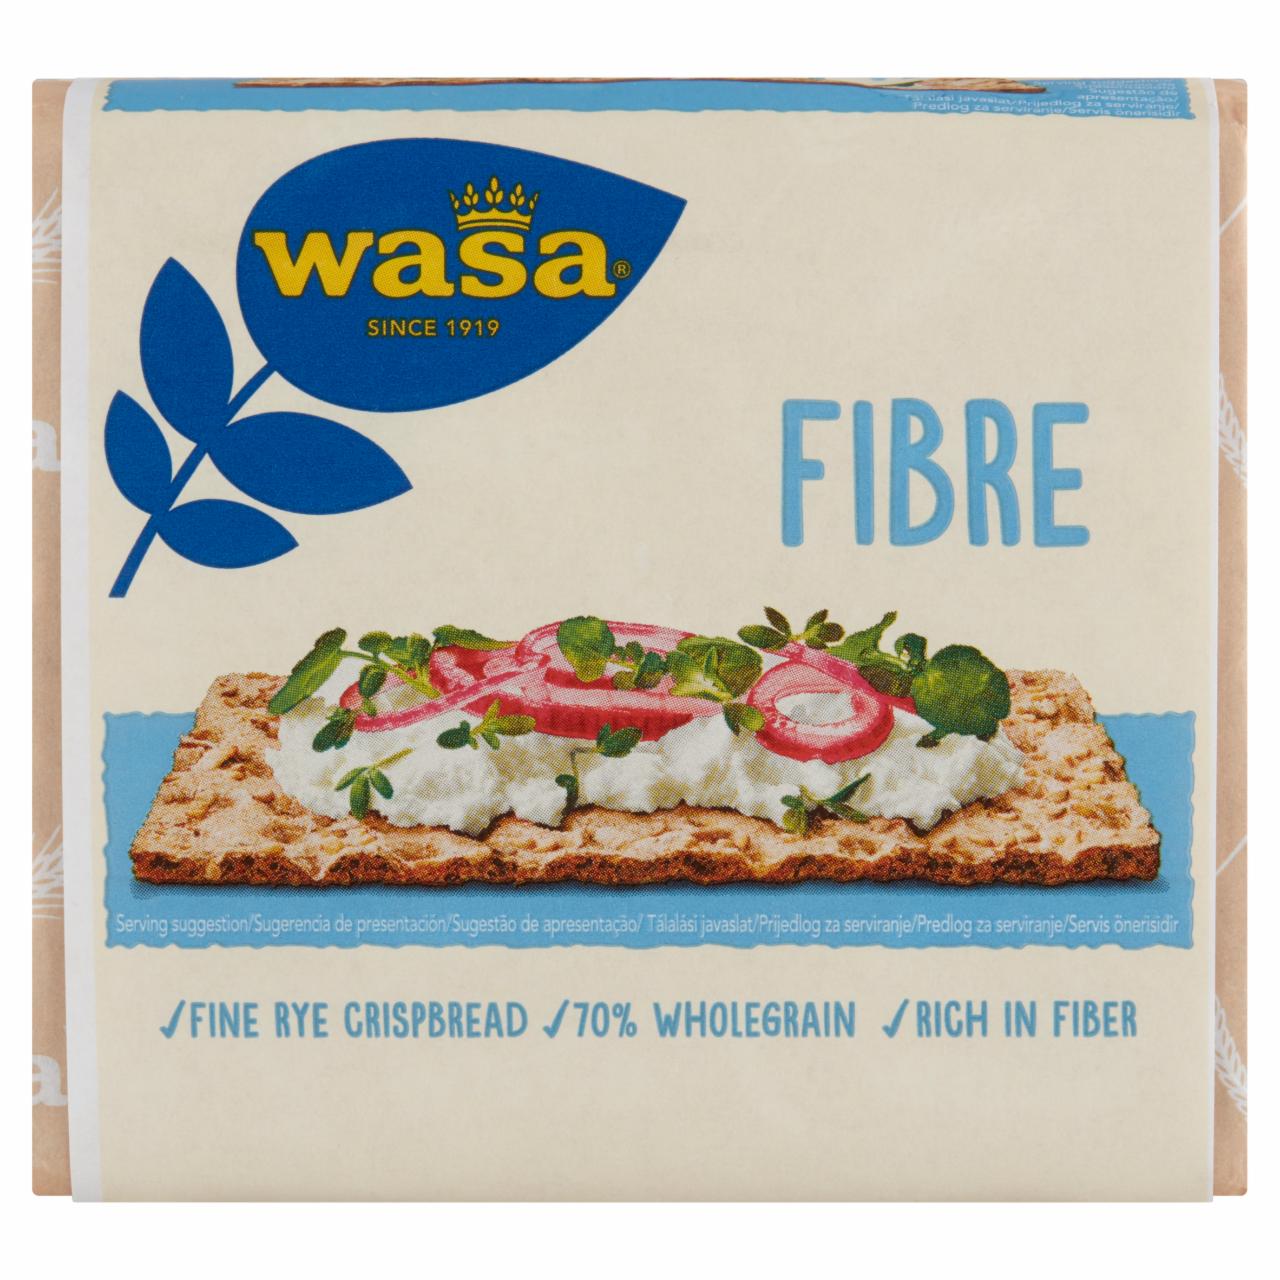 Képek - Fibre élelmi rostokban gazdag, rozsliszttel készült sütőipari termék Wasa